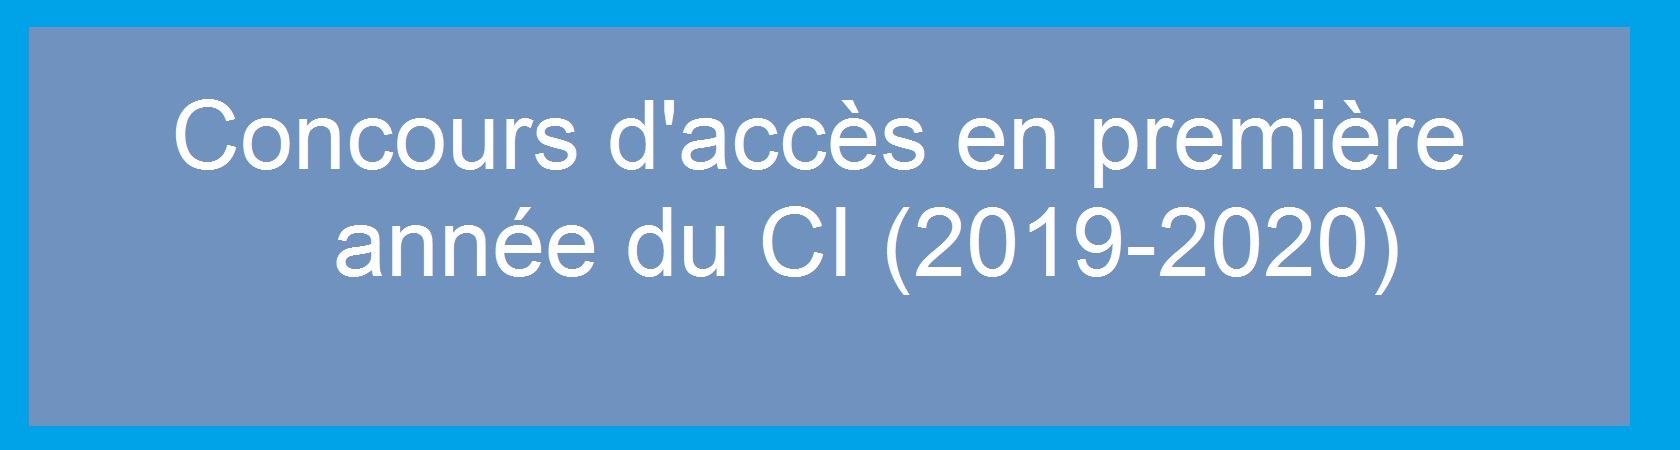 Concours d’accès en première année du CI (2019-2020)